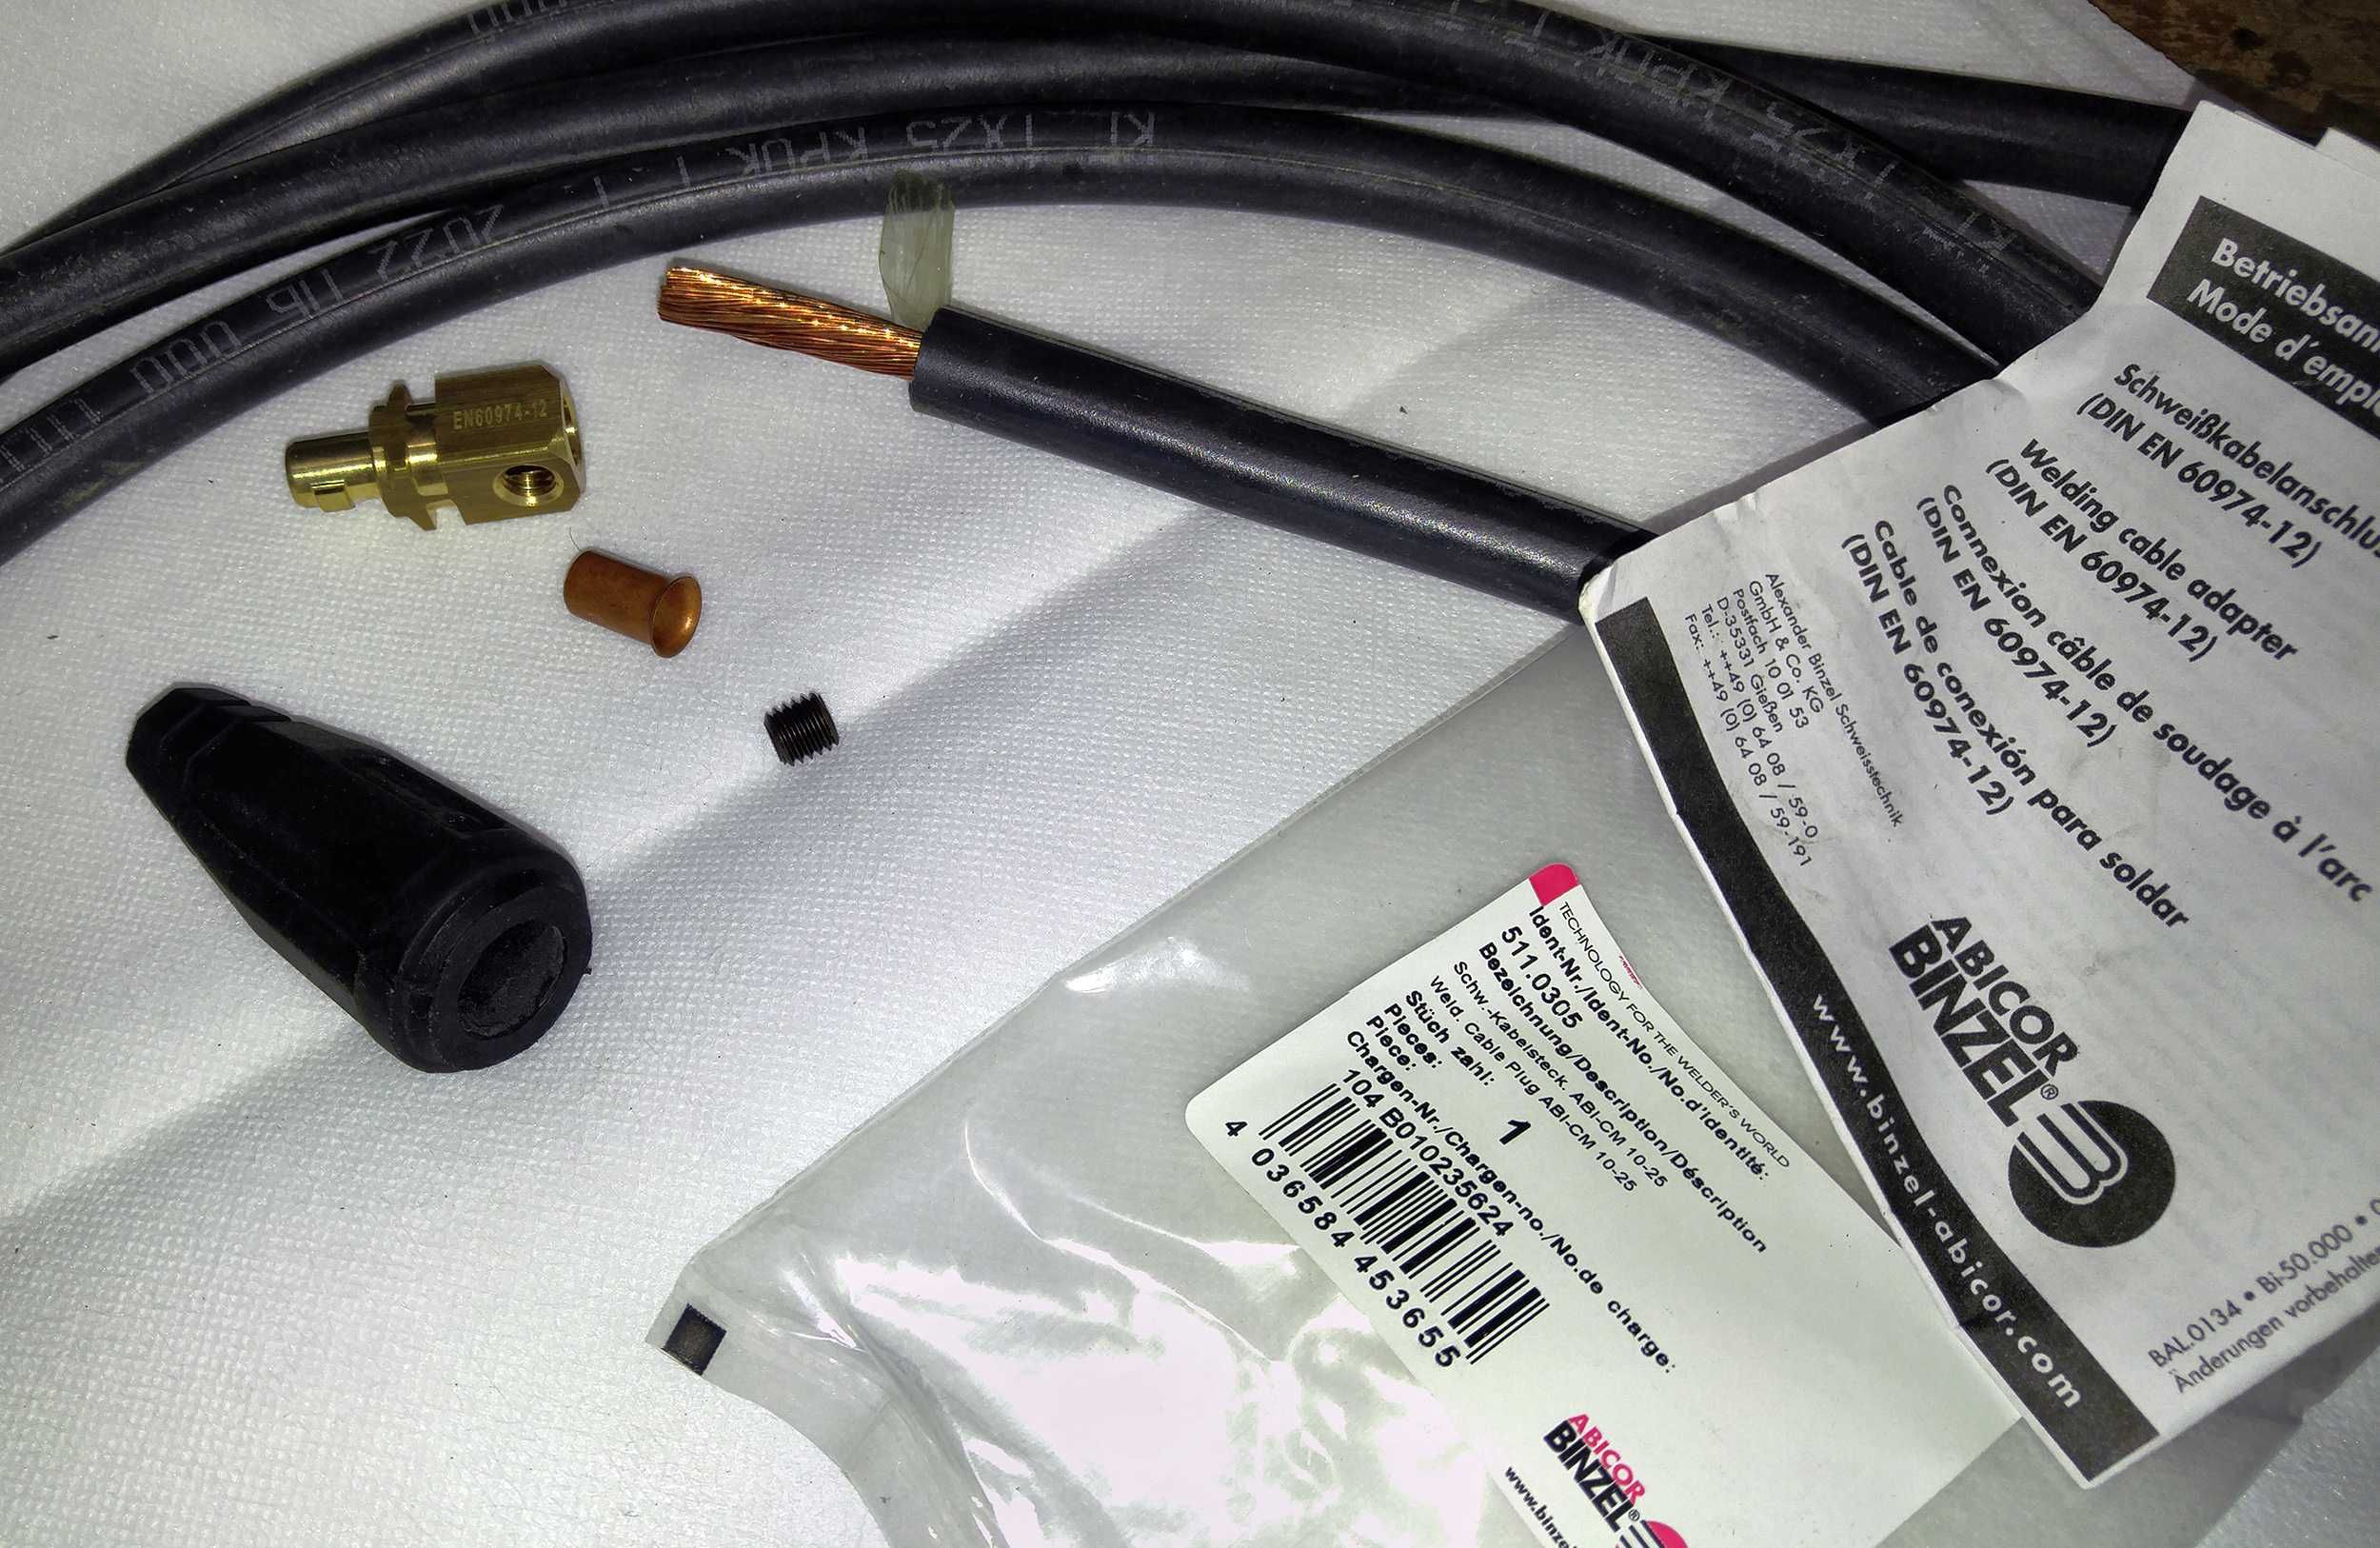 Мощный комплект сварочных кабелей с держателем ESAB для инвертора